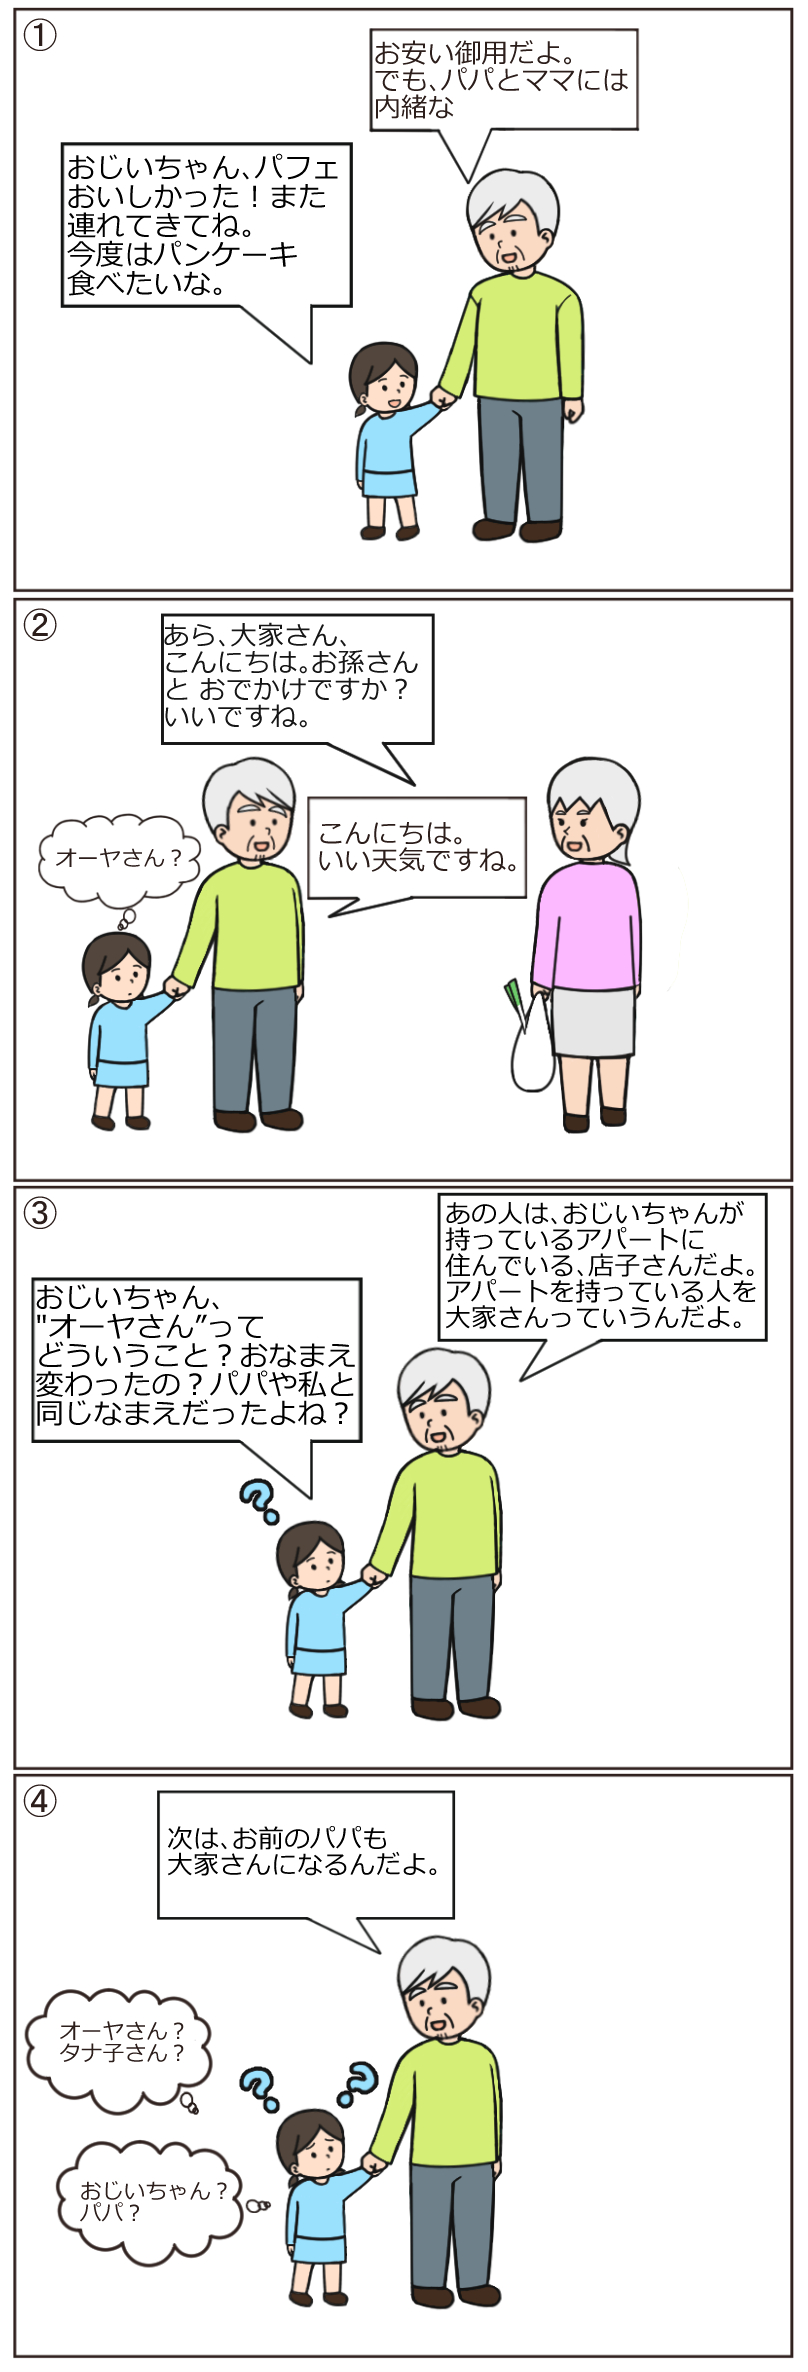 漫画（Iさん（75歳）は東京23区内に大型のアパートを１棟所有している。自分の死後は、子ども3人に均等に財産を分けたいと考えている。）